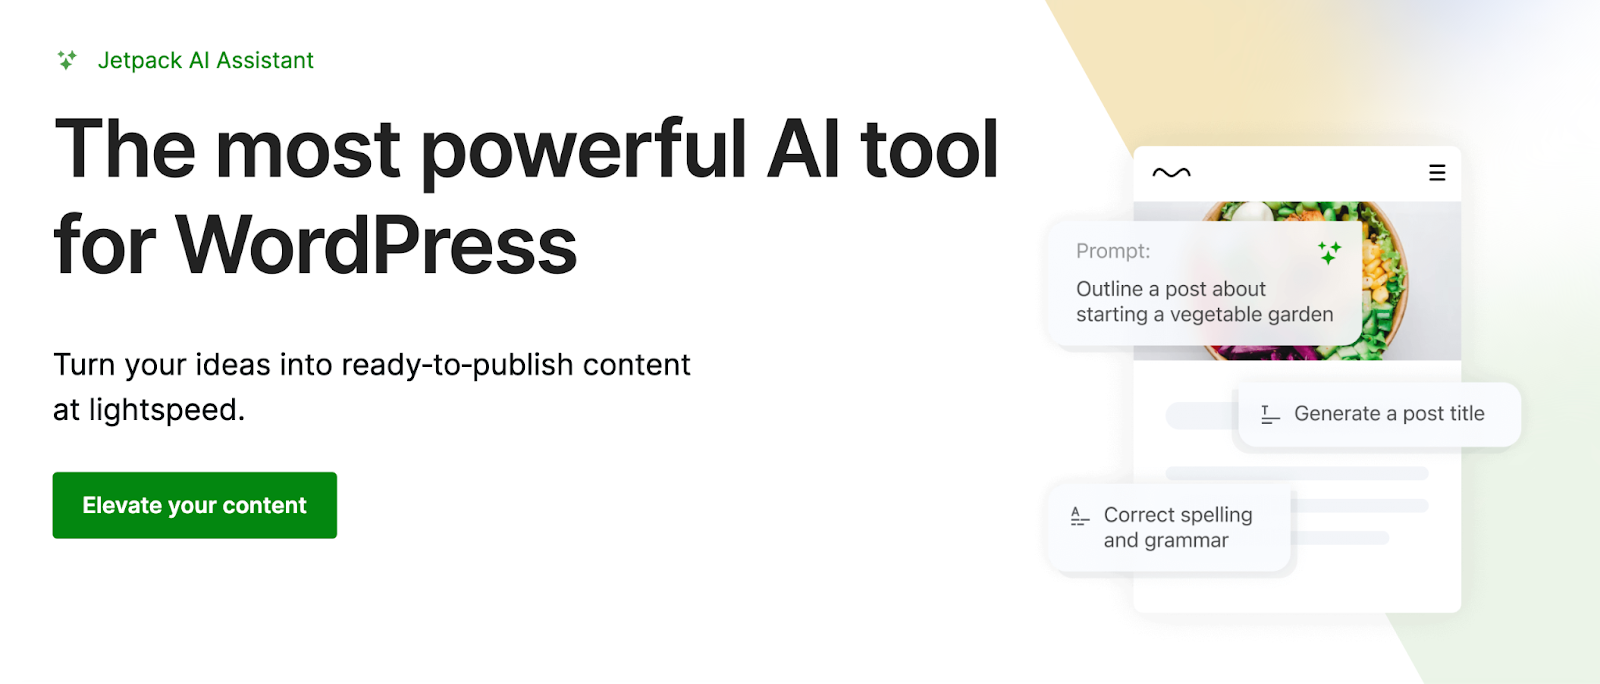 ผู้ช่วย Jetpack AI ช่วยให้คุณเปลี่ยนจากแนวคิดไปสู่เนื้อหาคุณภาพสูงได้ภายในไม่กี่นาที ทำให้เป็นหนึ่งในปลั๊กอิน AI ที่ทรงพลังและมีประโยชน์ที่สุดสำหรับ WordPress